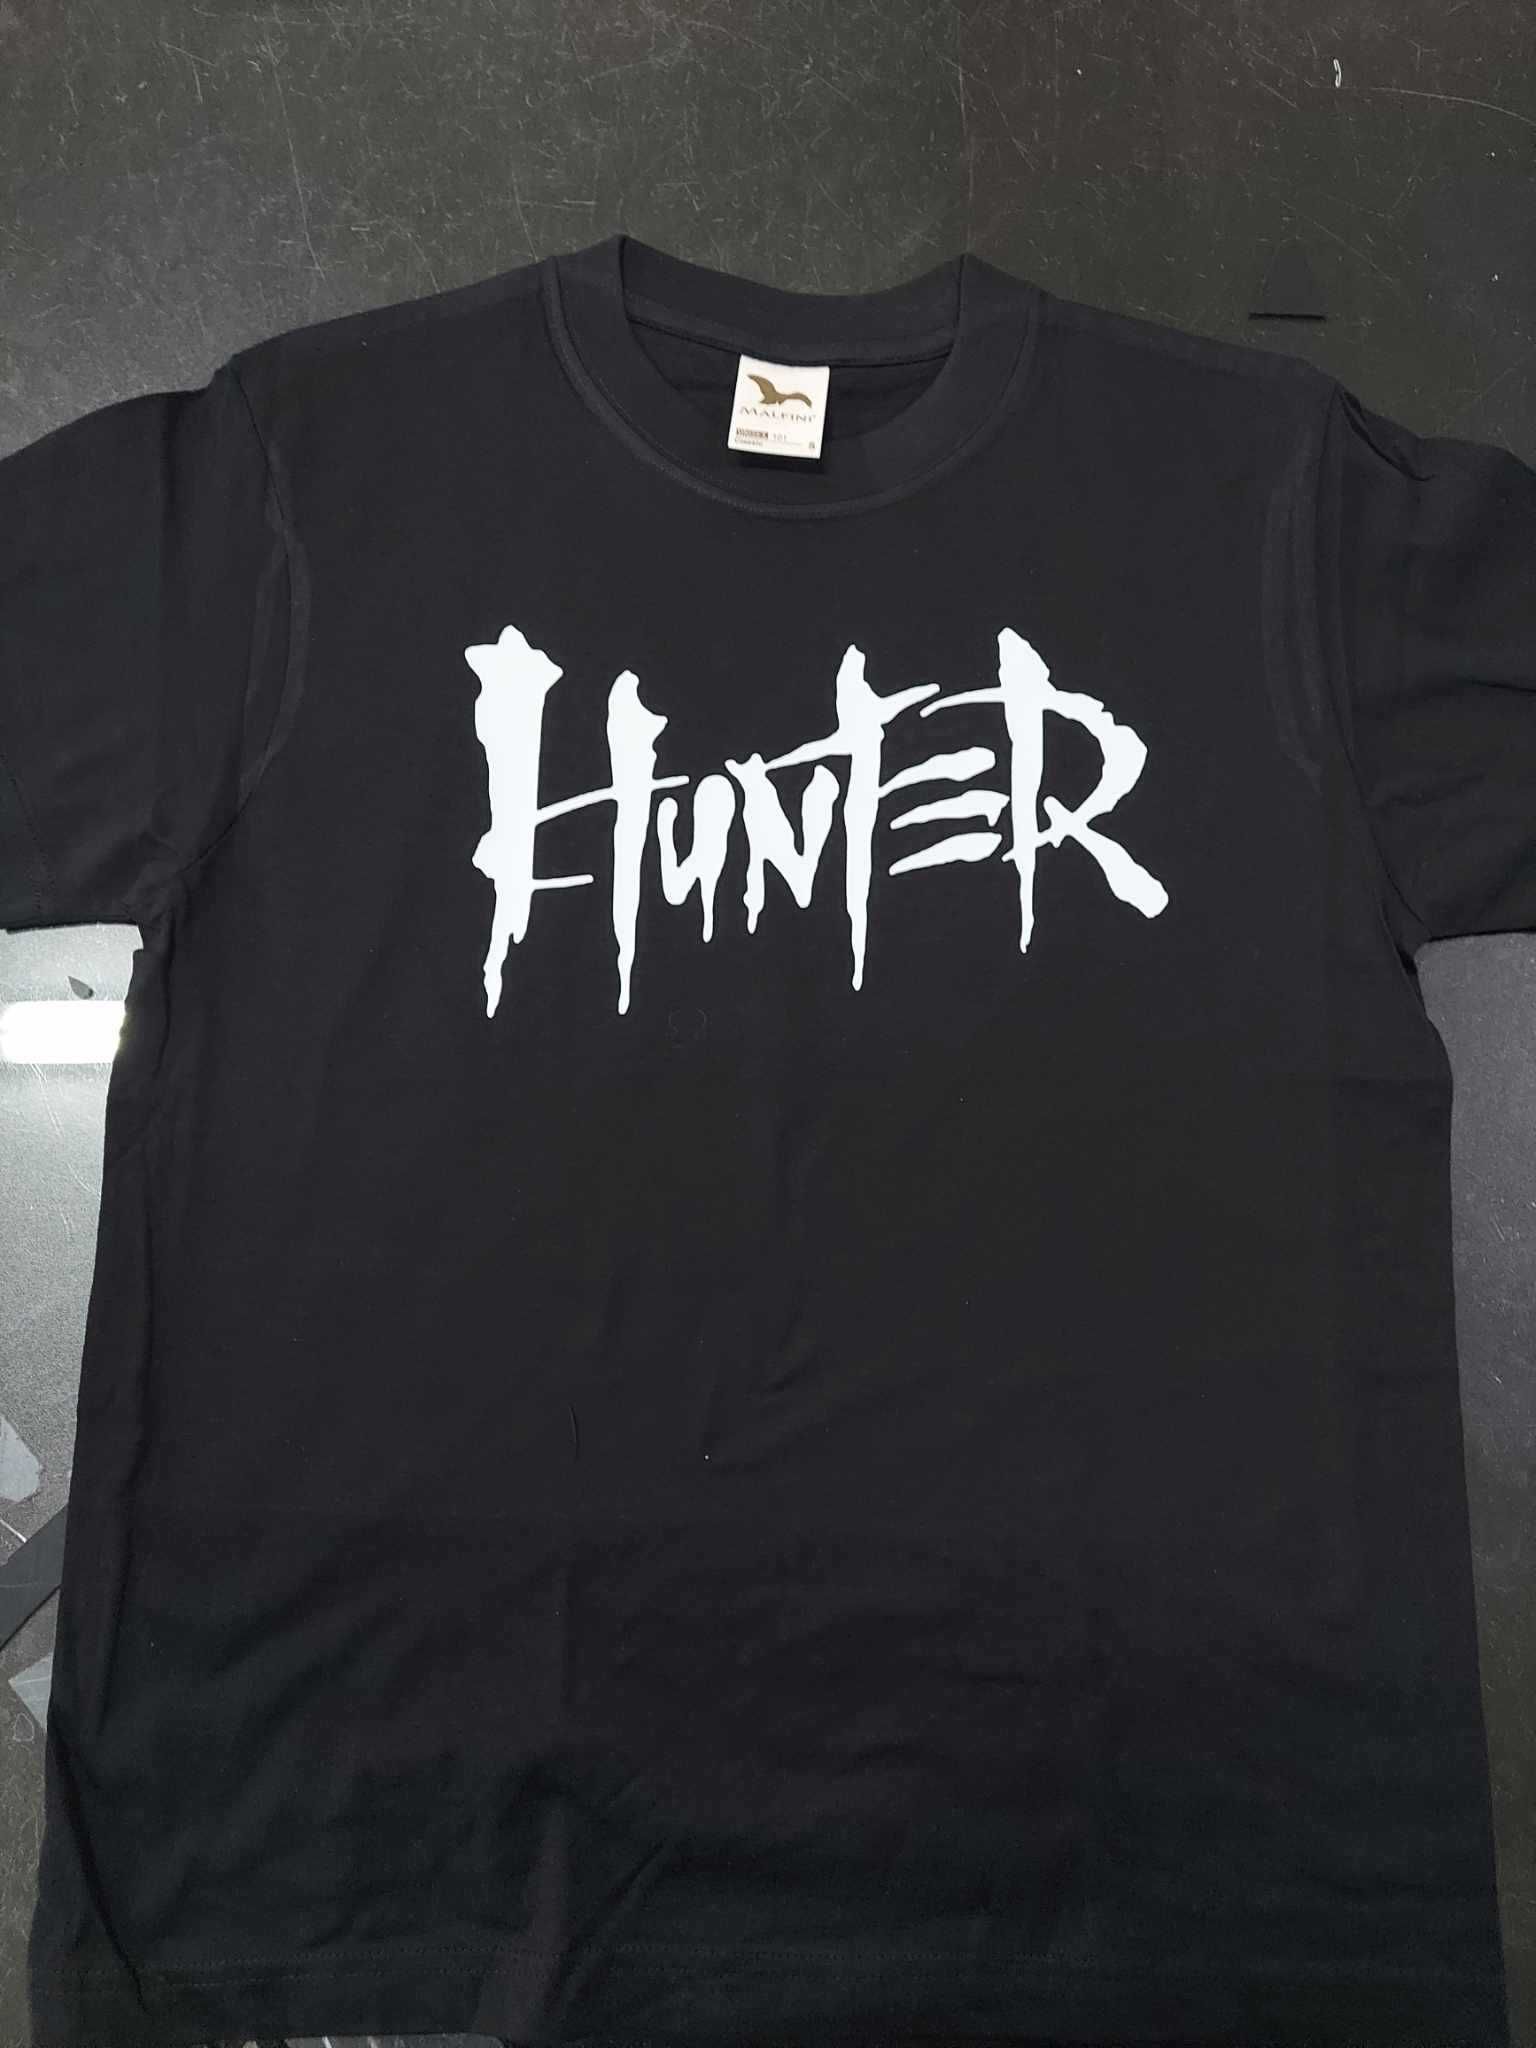 Koszulka Hunter zespół metal nieużywana rozmiar S uniseks